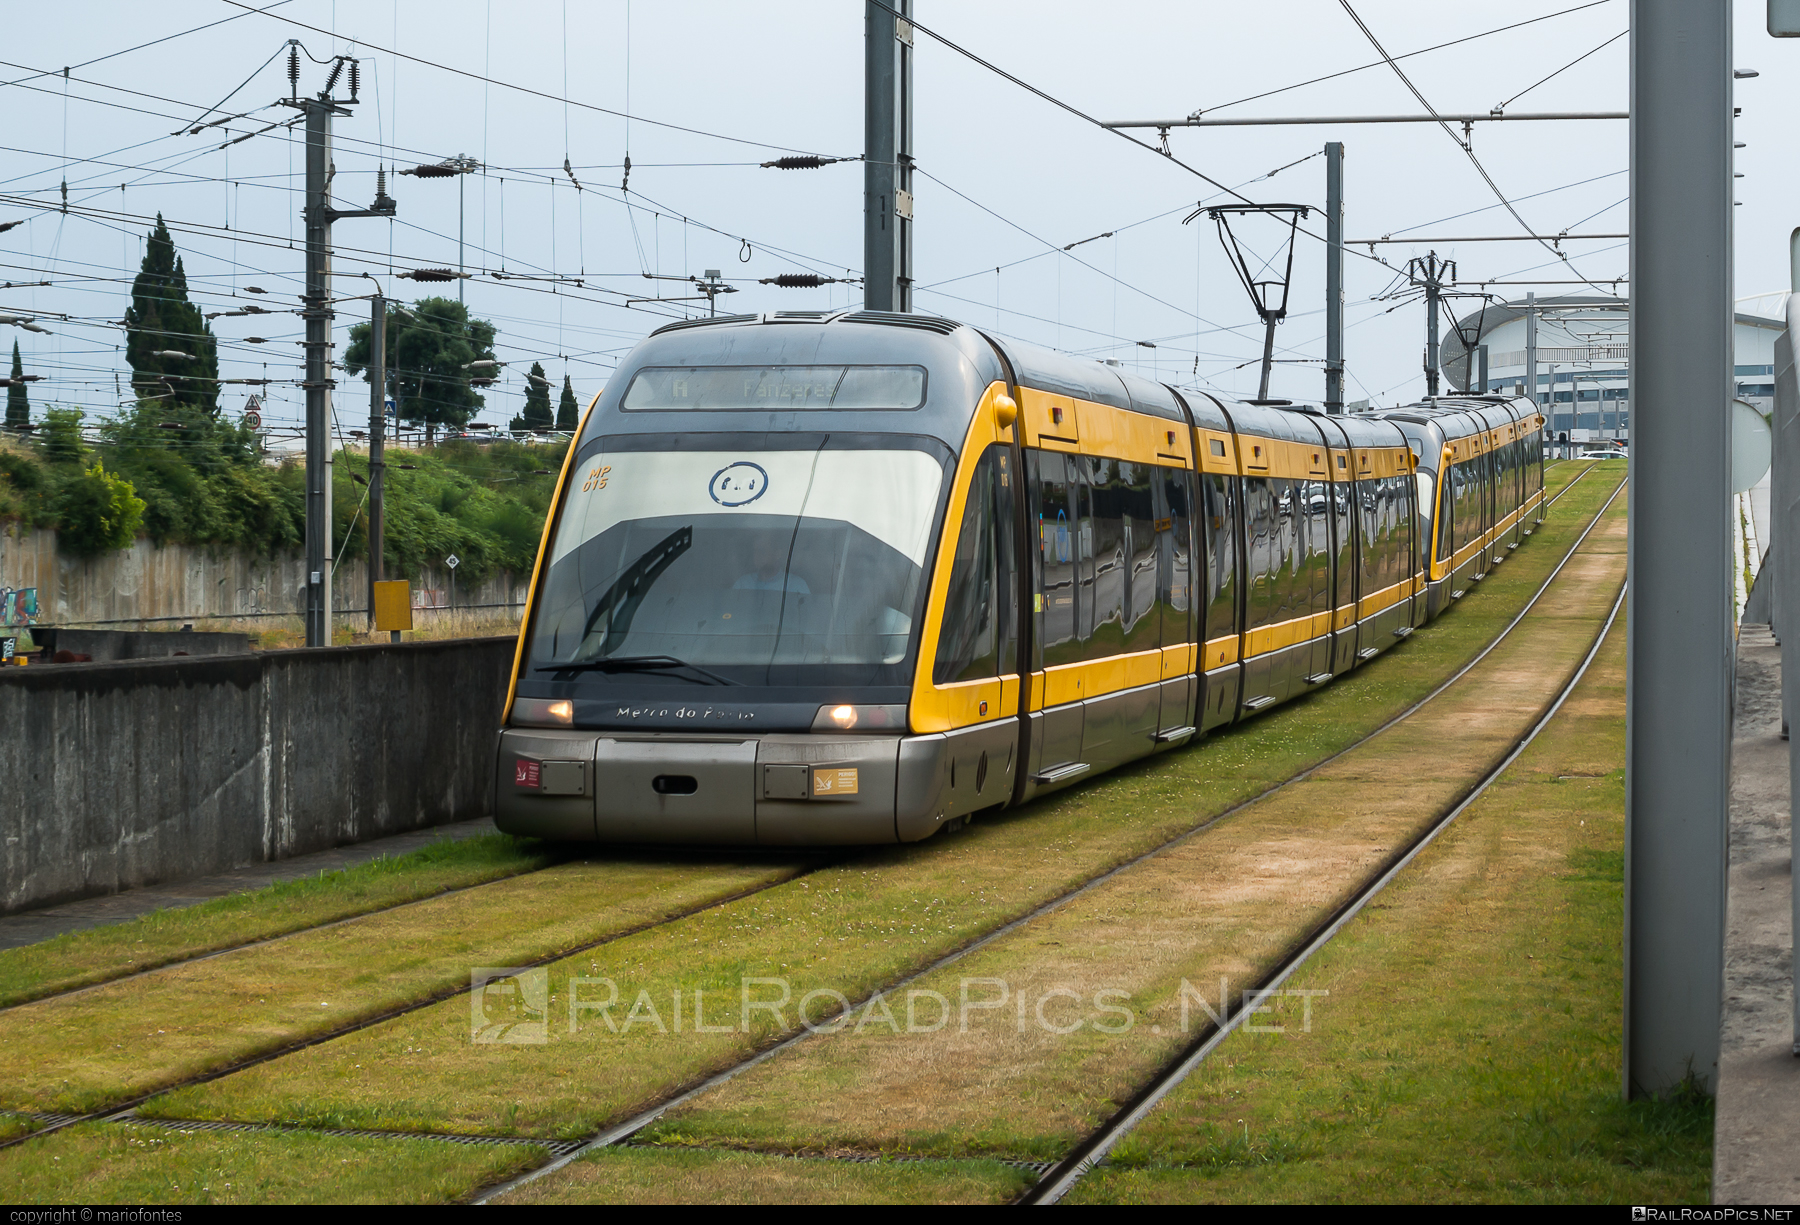 Bombardier Flexity Outlook (Porto Eurotram) - MP015 operated by Metro do Porto #bombardier #bombardierFlexity #eurotram #flexityOutlook #flexityOutlookE #metroDoPorto #tram